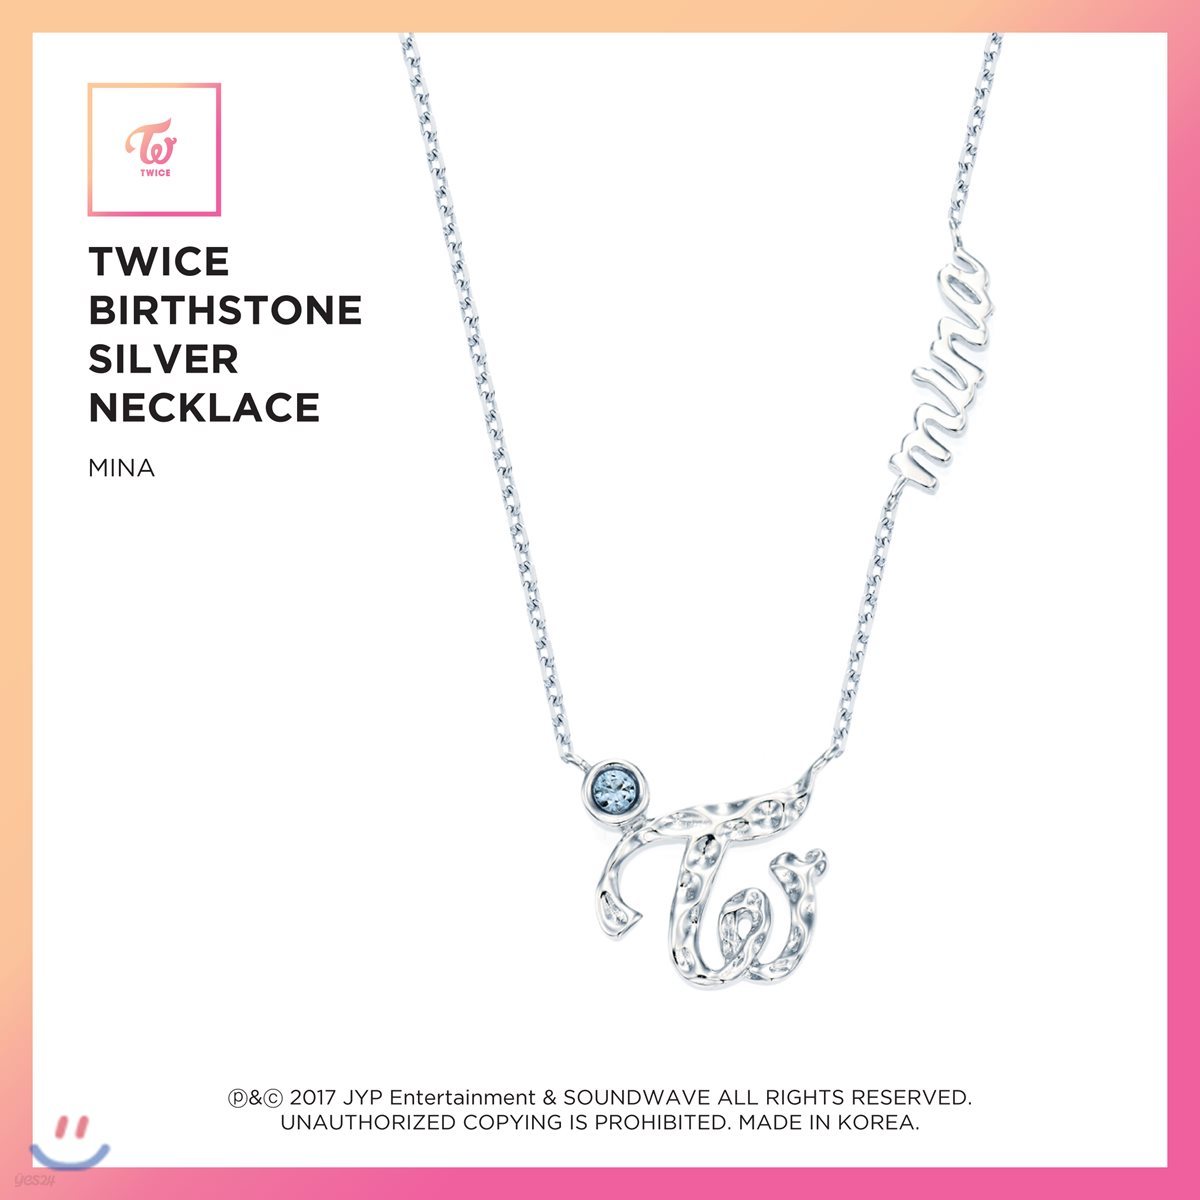 트와이스 (TWICE) - TWICE Birthstone Silver Necklace [Mina]